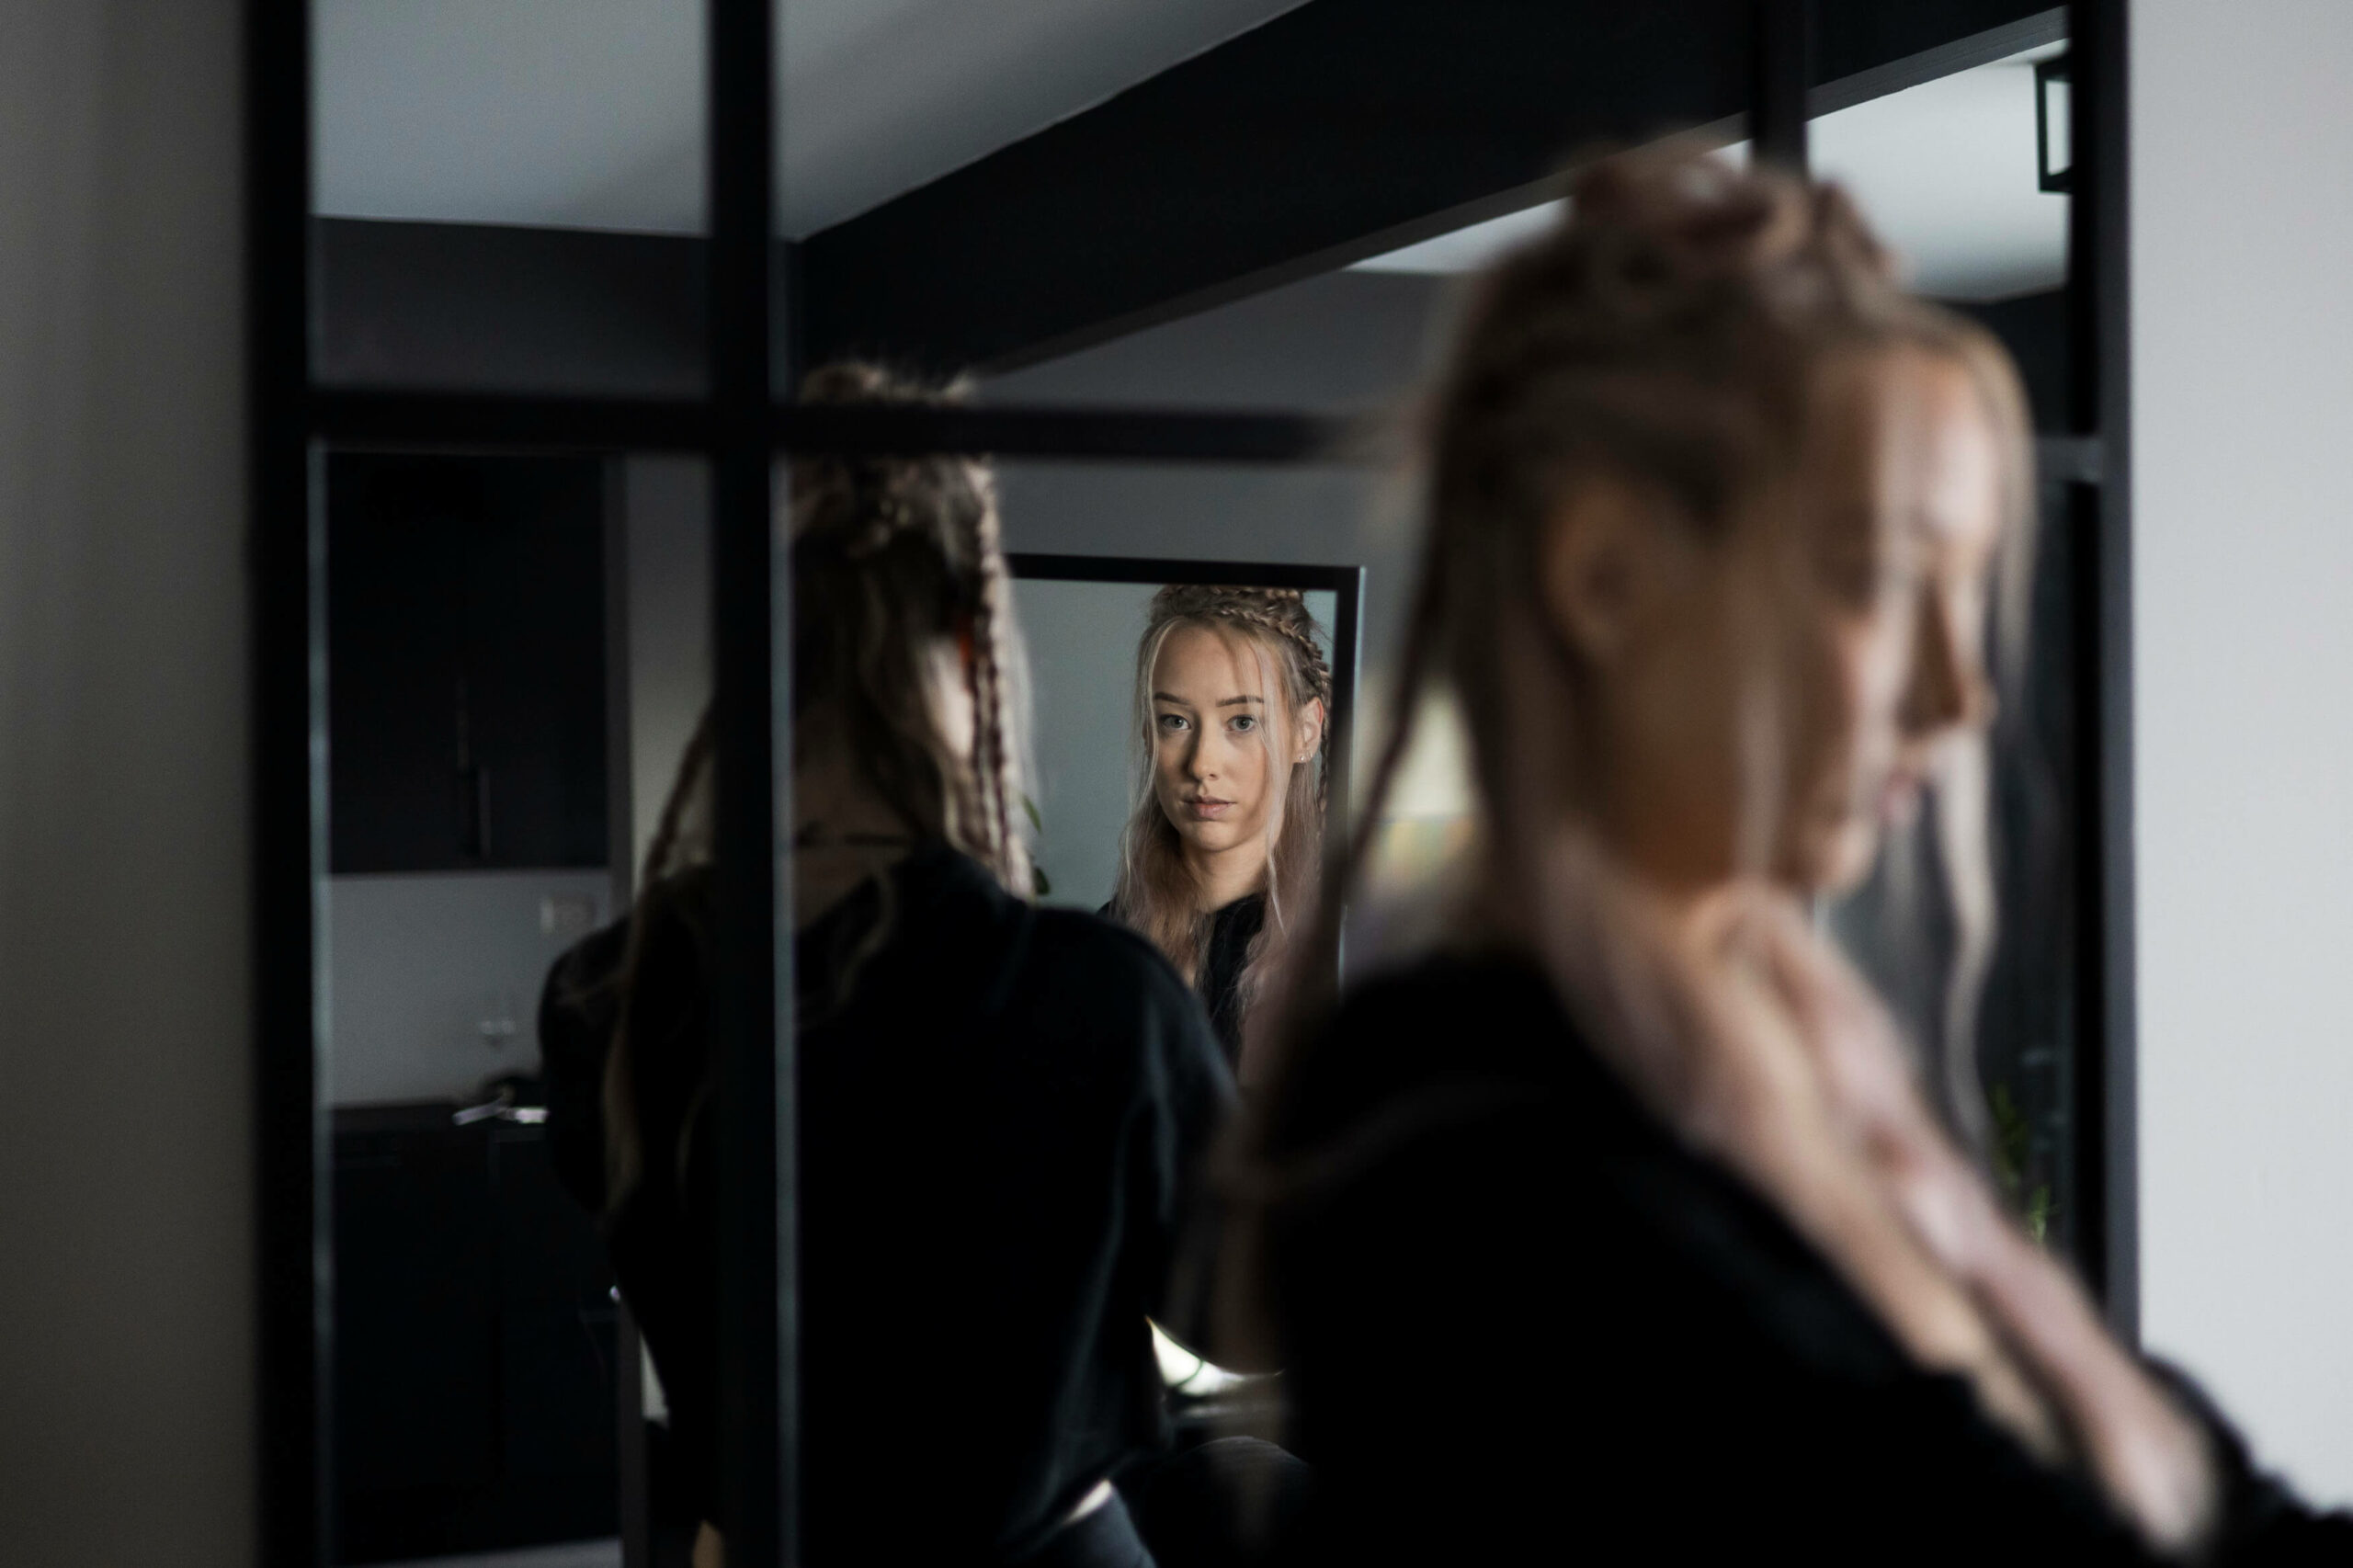 Catharina har teke med seg spegelen bort til ein større spegel for å kunne sjå korleis hårfirsyren ser ut bakfrå. Dette skapar fleire forskjellige refleksjonar av ho. Mist i biletet ser Catharina i spegelen og rett i kameraet.